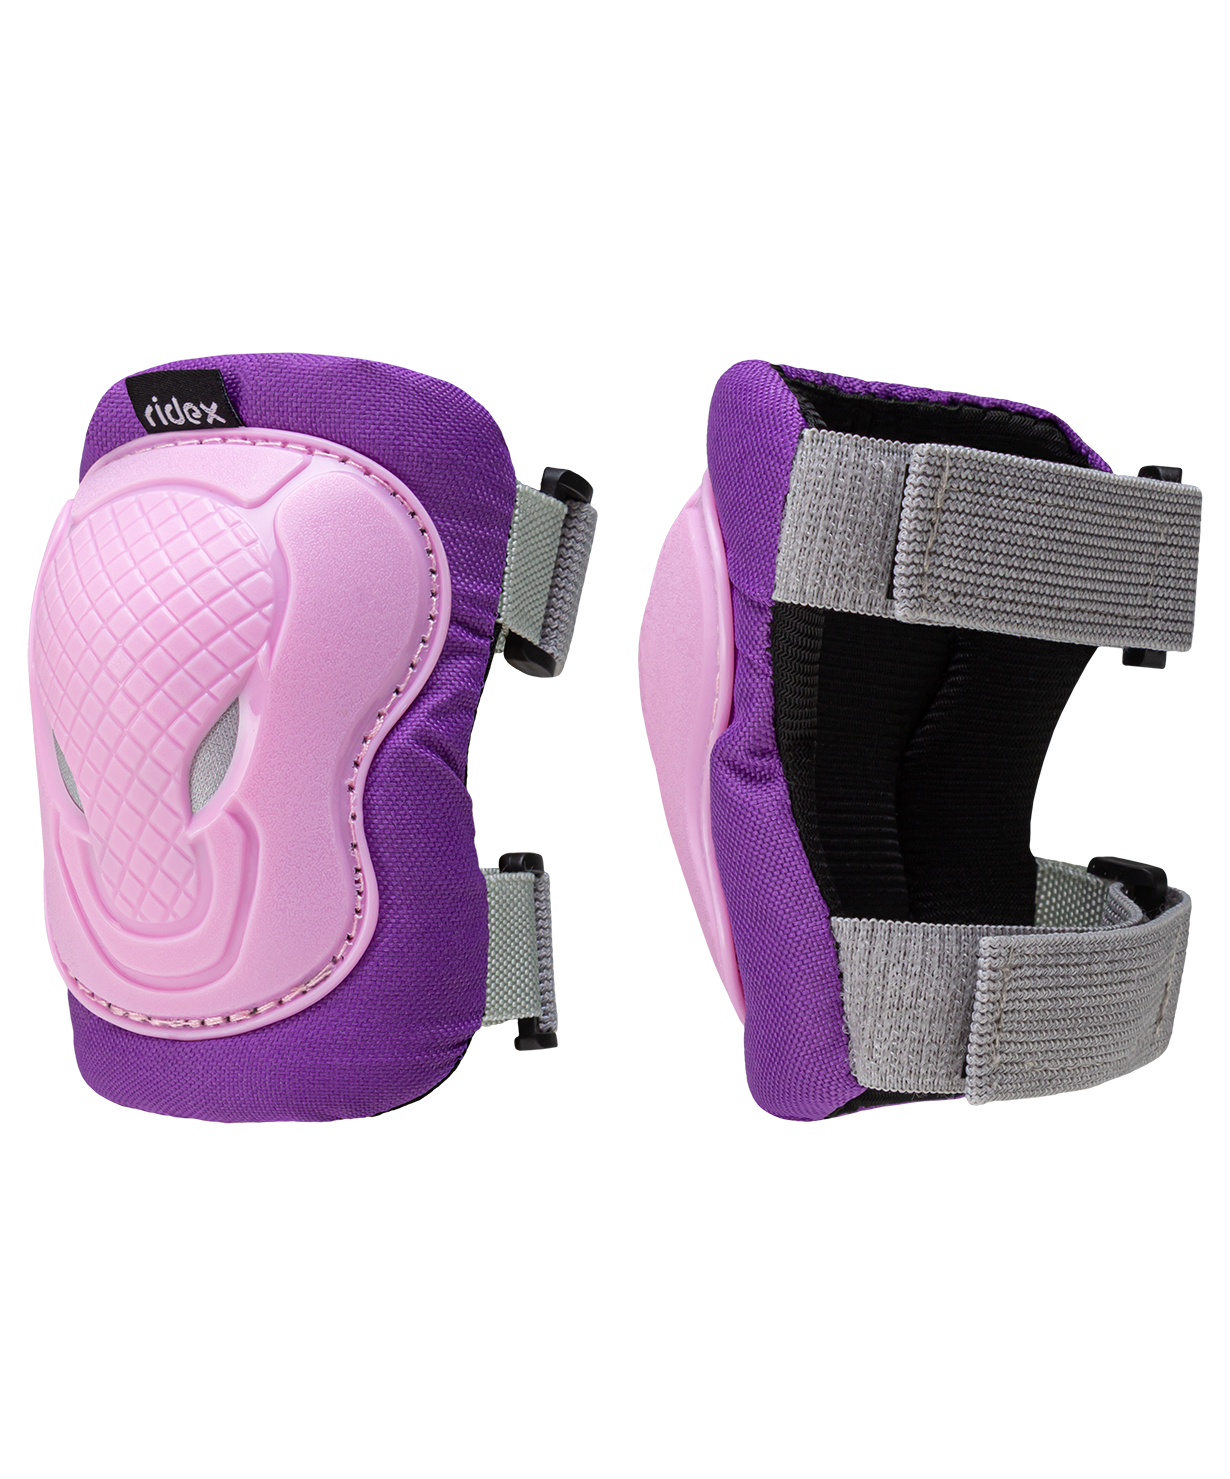 Комплект защиты Ridex Creative, розовый размер S